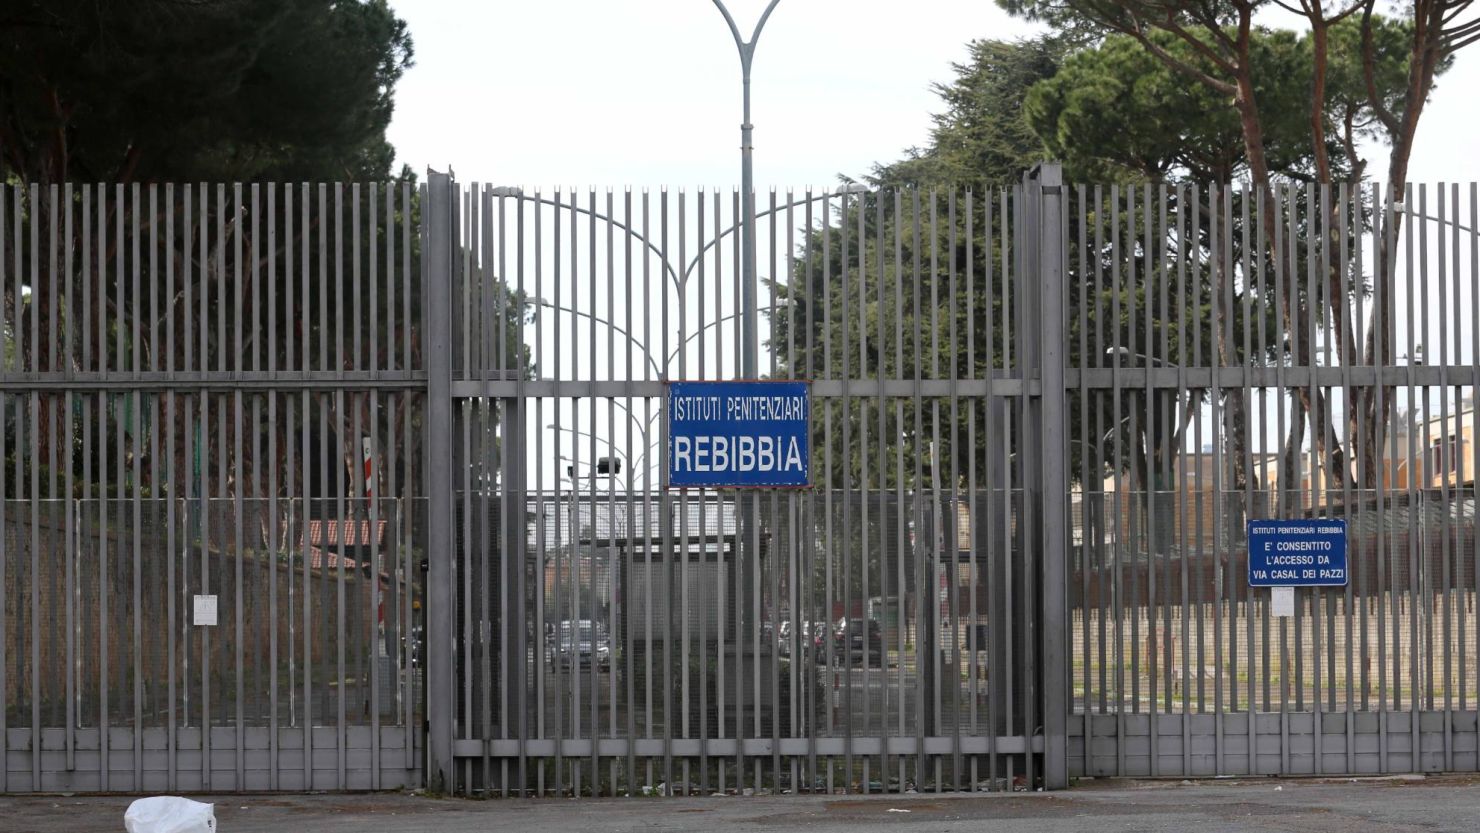 A mafia boss incarcerated at Rome's Rebibbia prison allegedly bit off a prison guard's finger (Credit Image: © Sisto/ROPI via ZUMA Press)